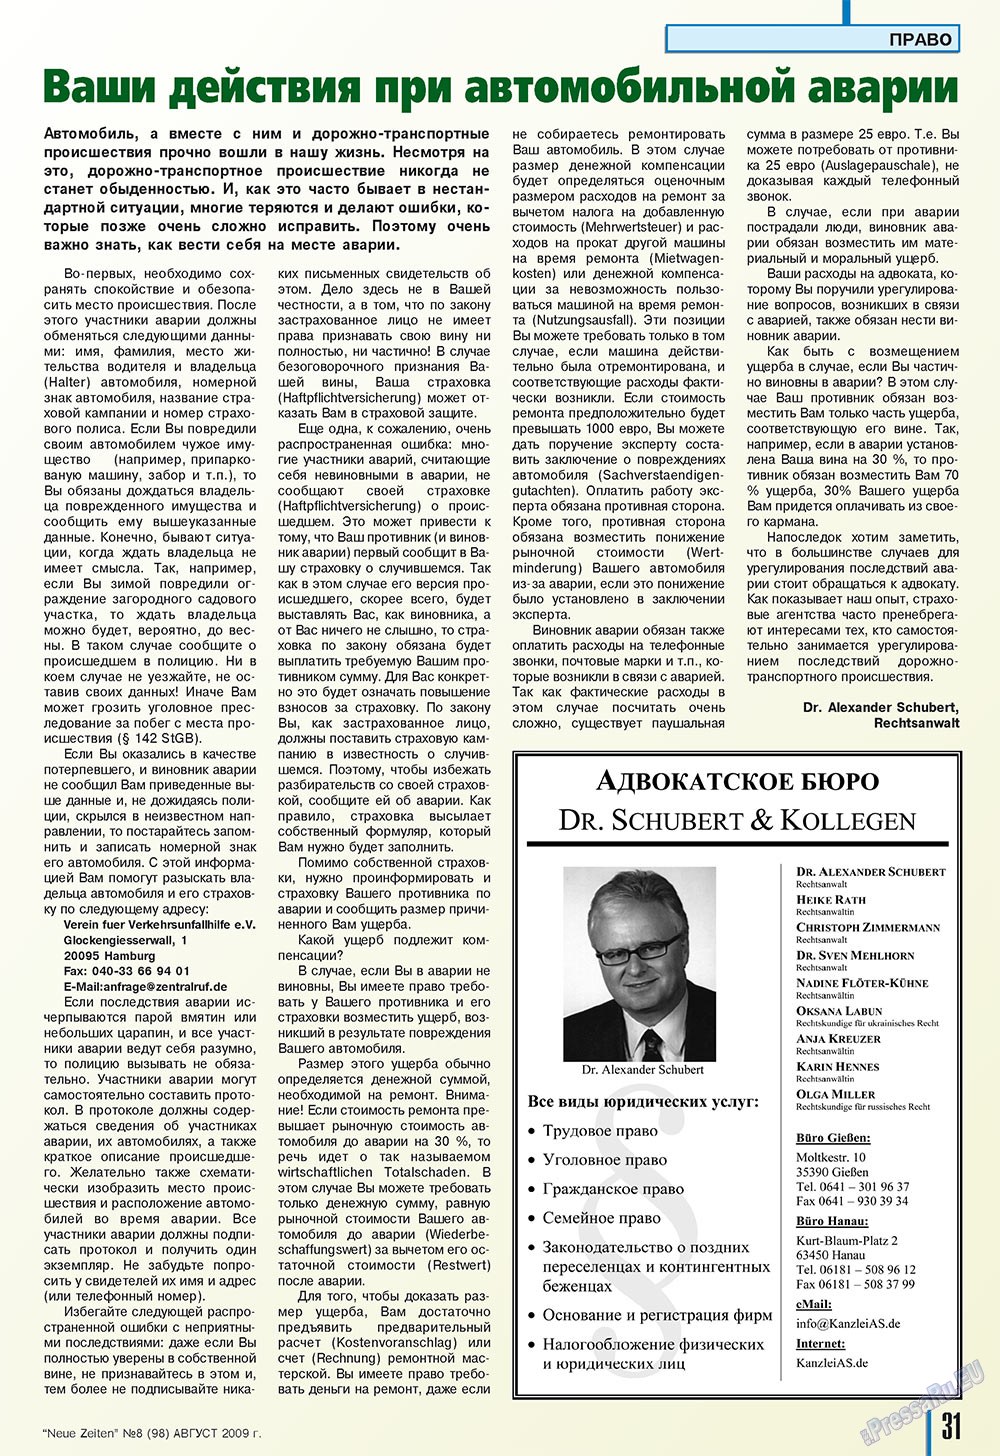 Neue Zeiten, журнал. 2009 №8 стр.31